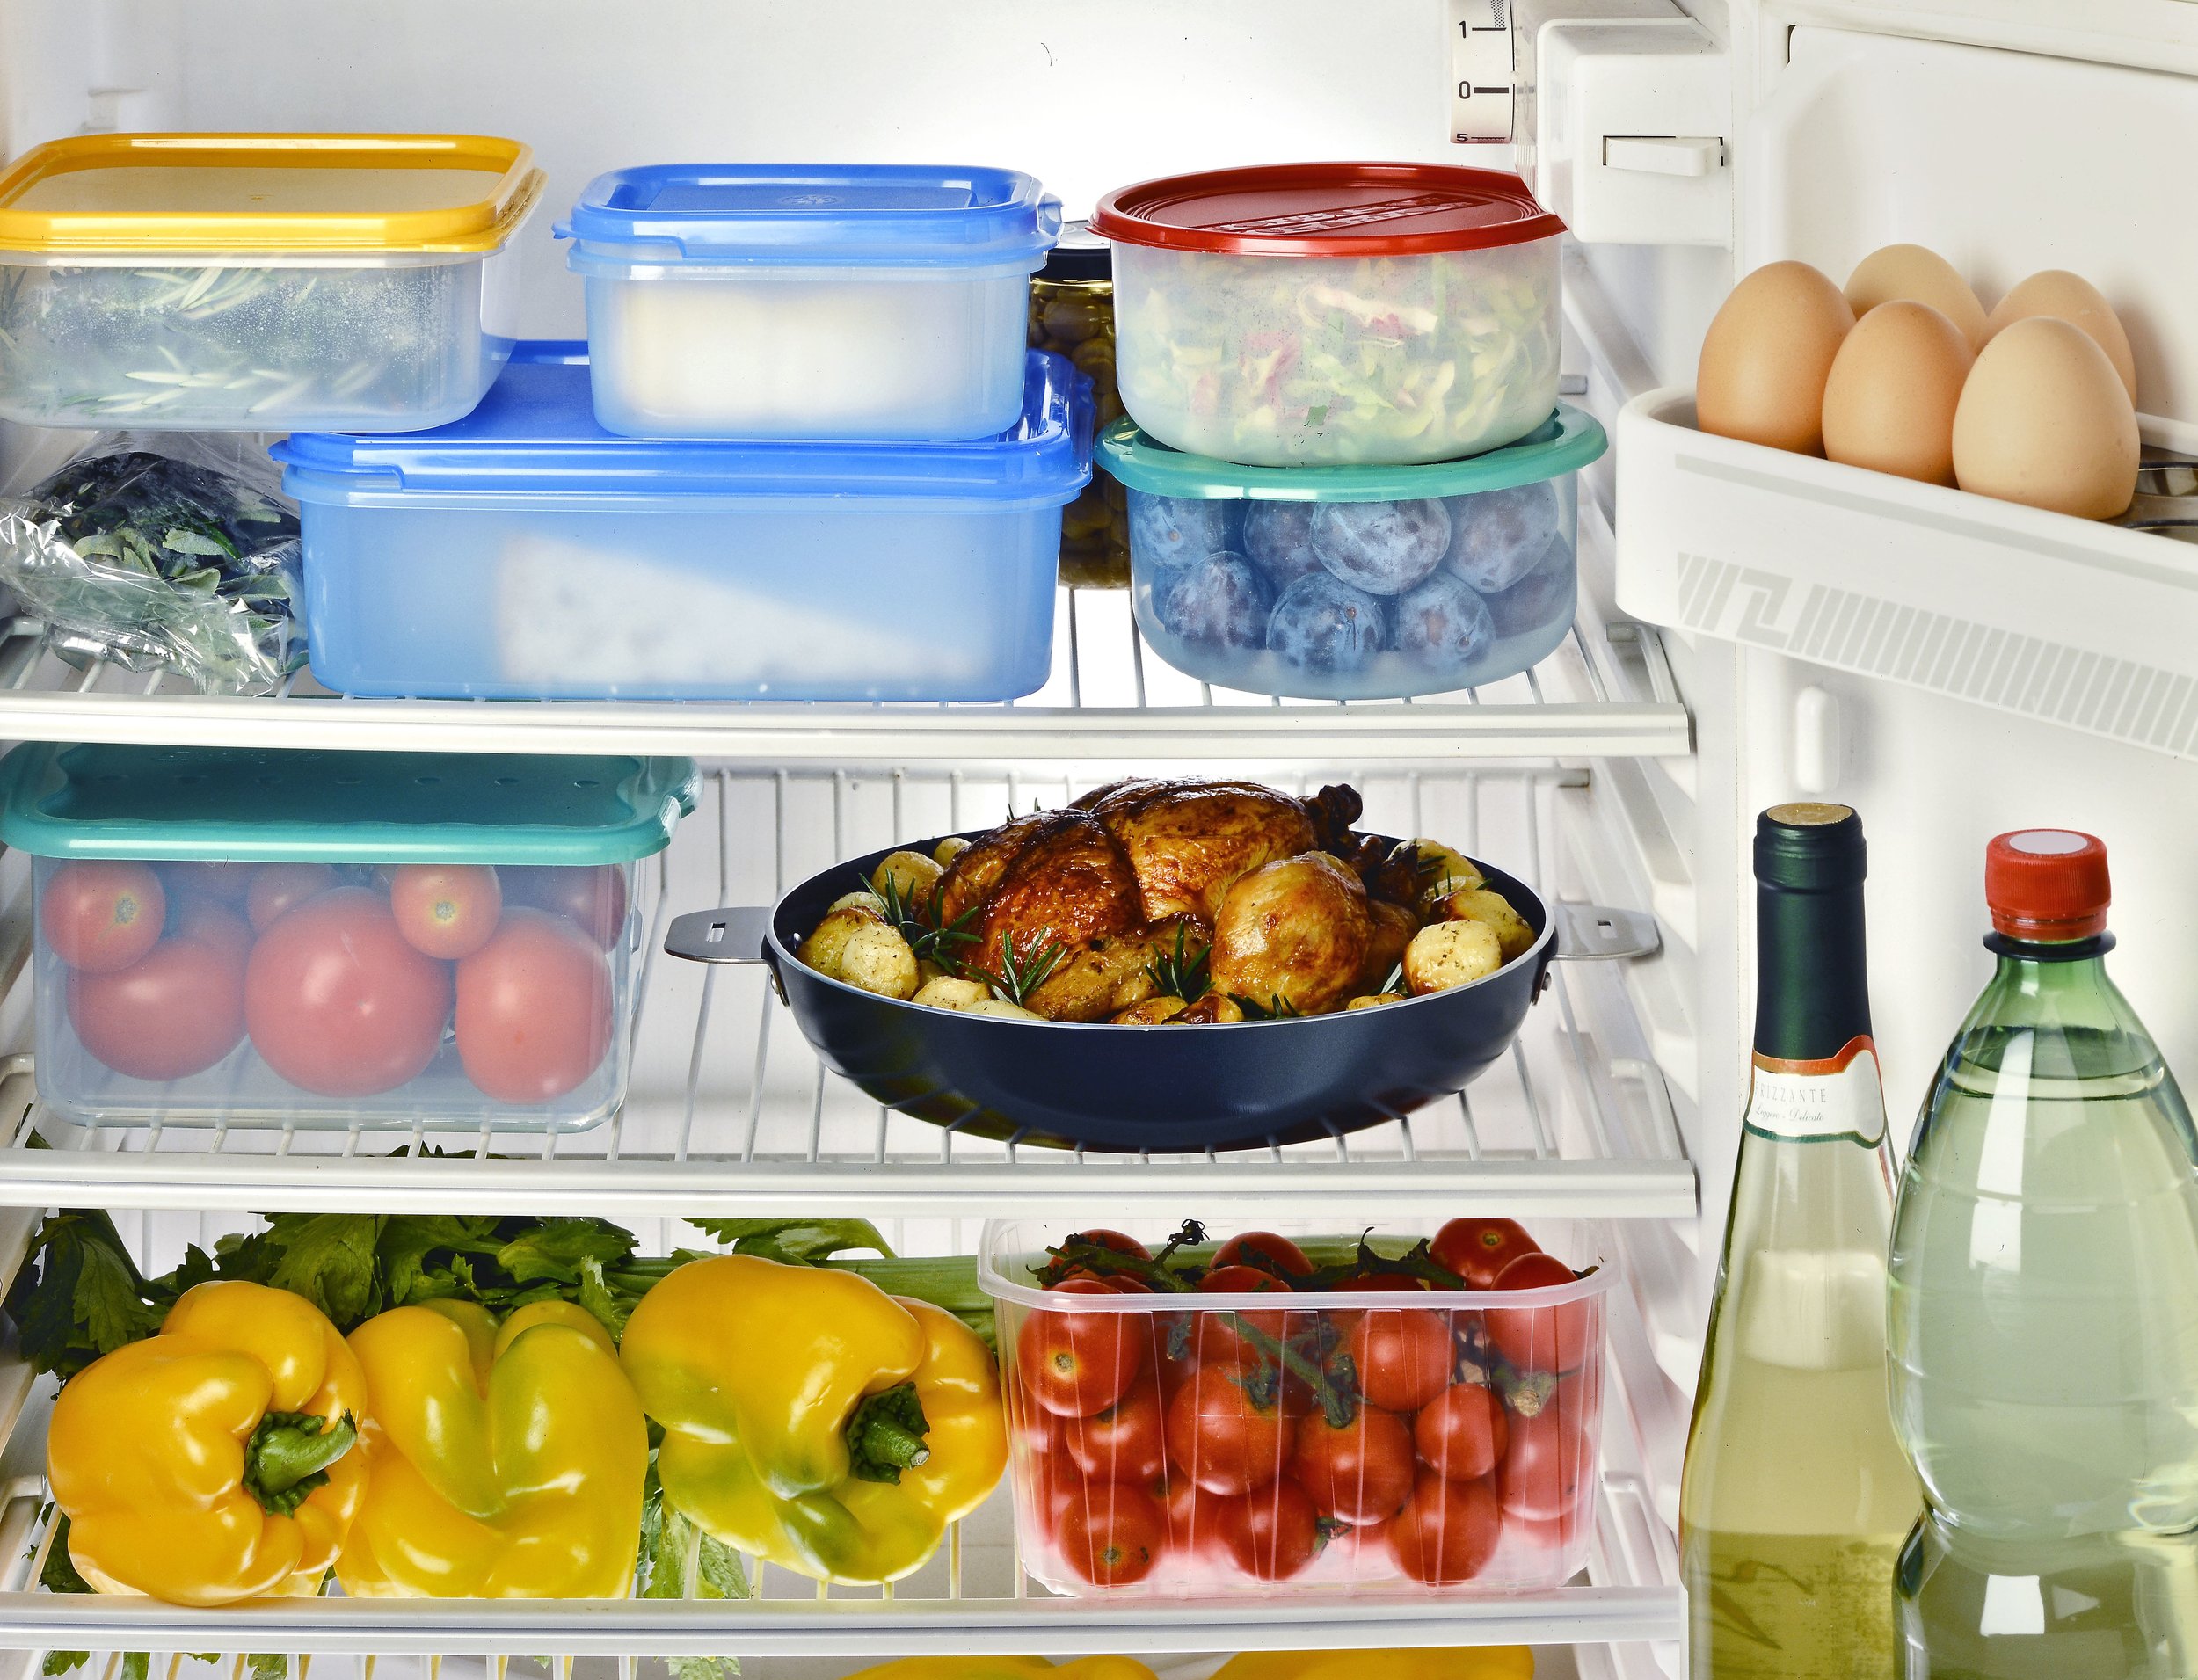 Реализация скоропортящихся пищевых. Проддуктыв холодильнике. Холодильник с продуктами. Хранение продуктов. Холодильник с едой.